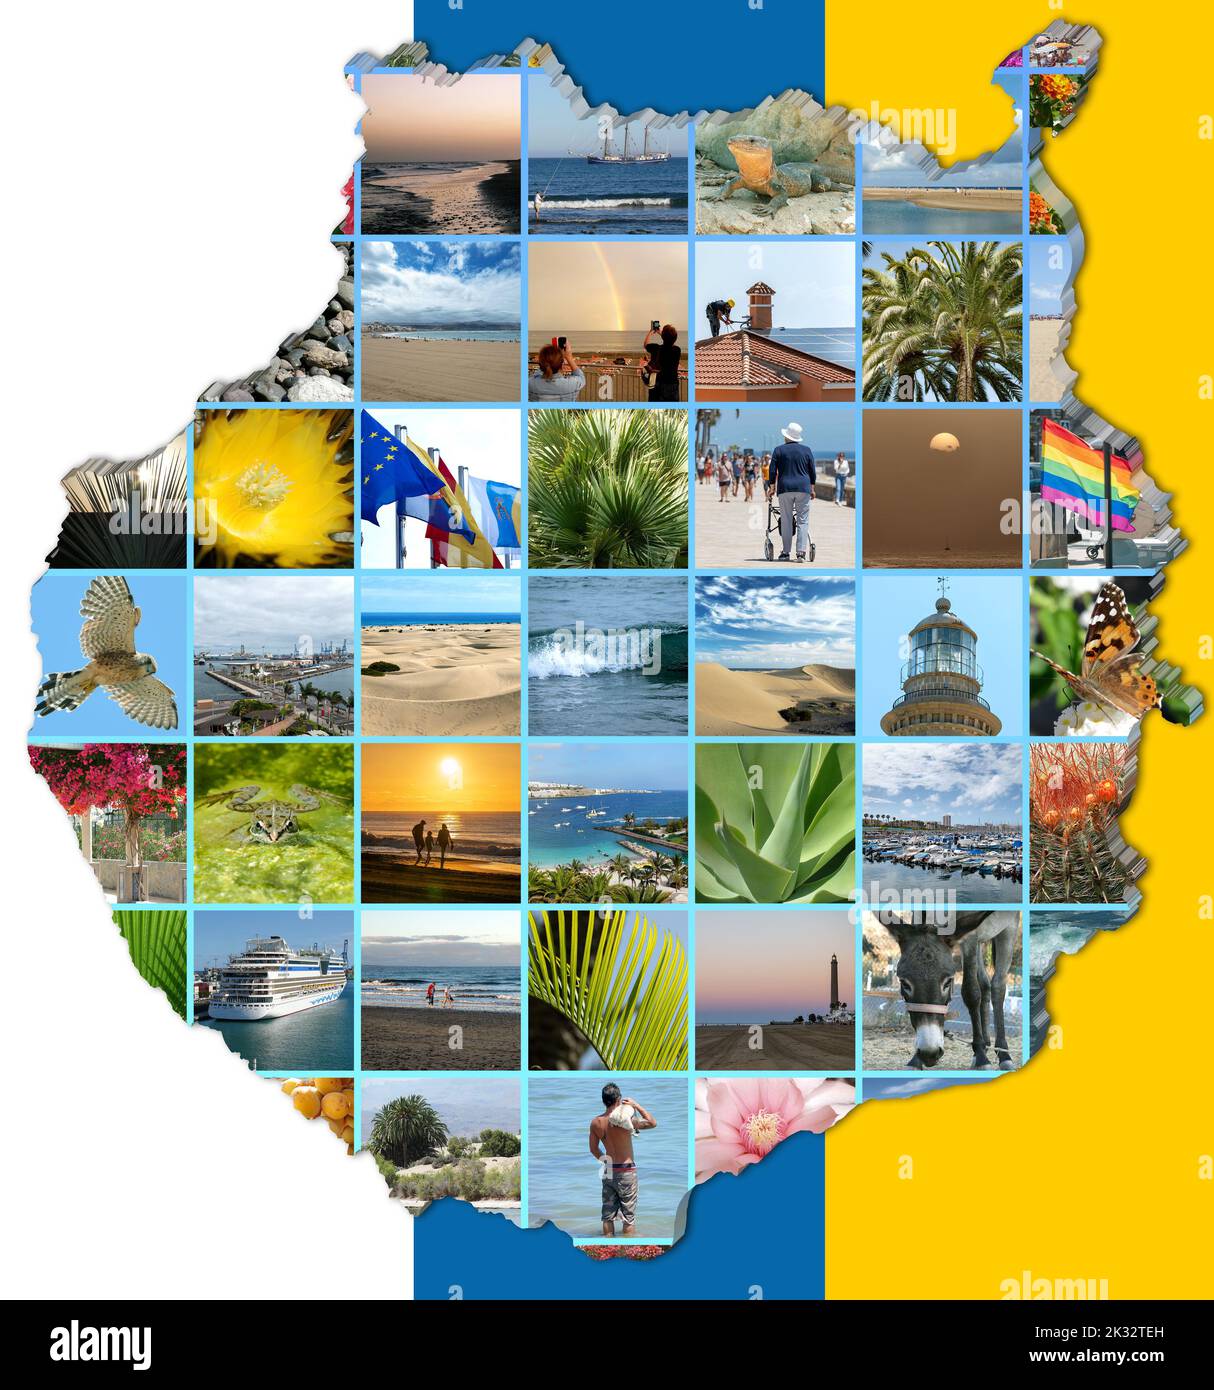 Collage de fotos de Gran Canaria en vista de mapa de Gran Canaria, con los colores de la bandera canaria como fondo. Foto de stock